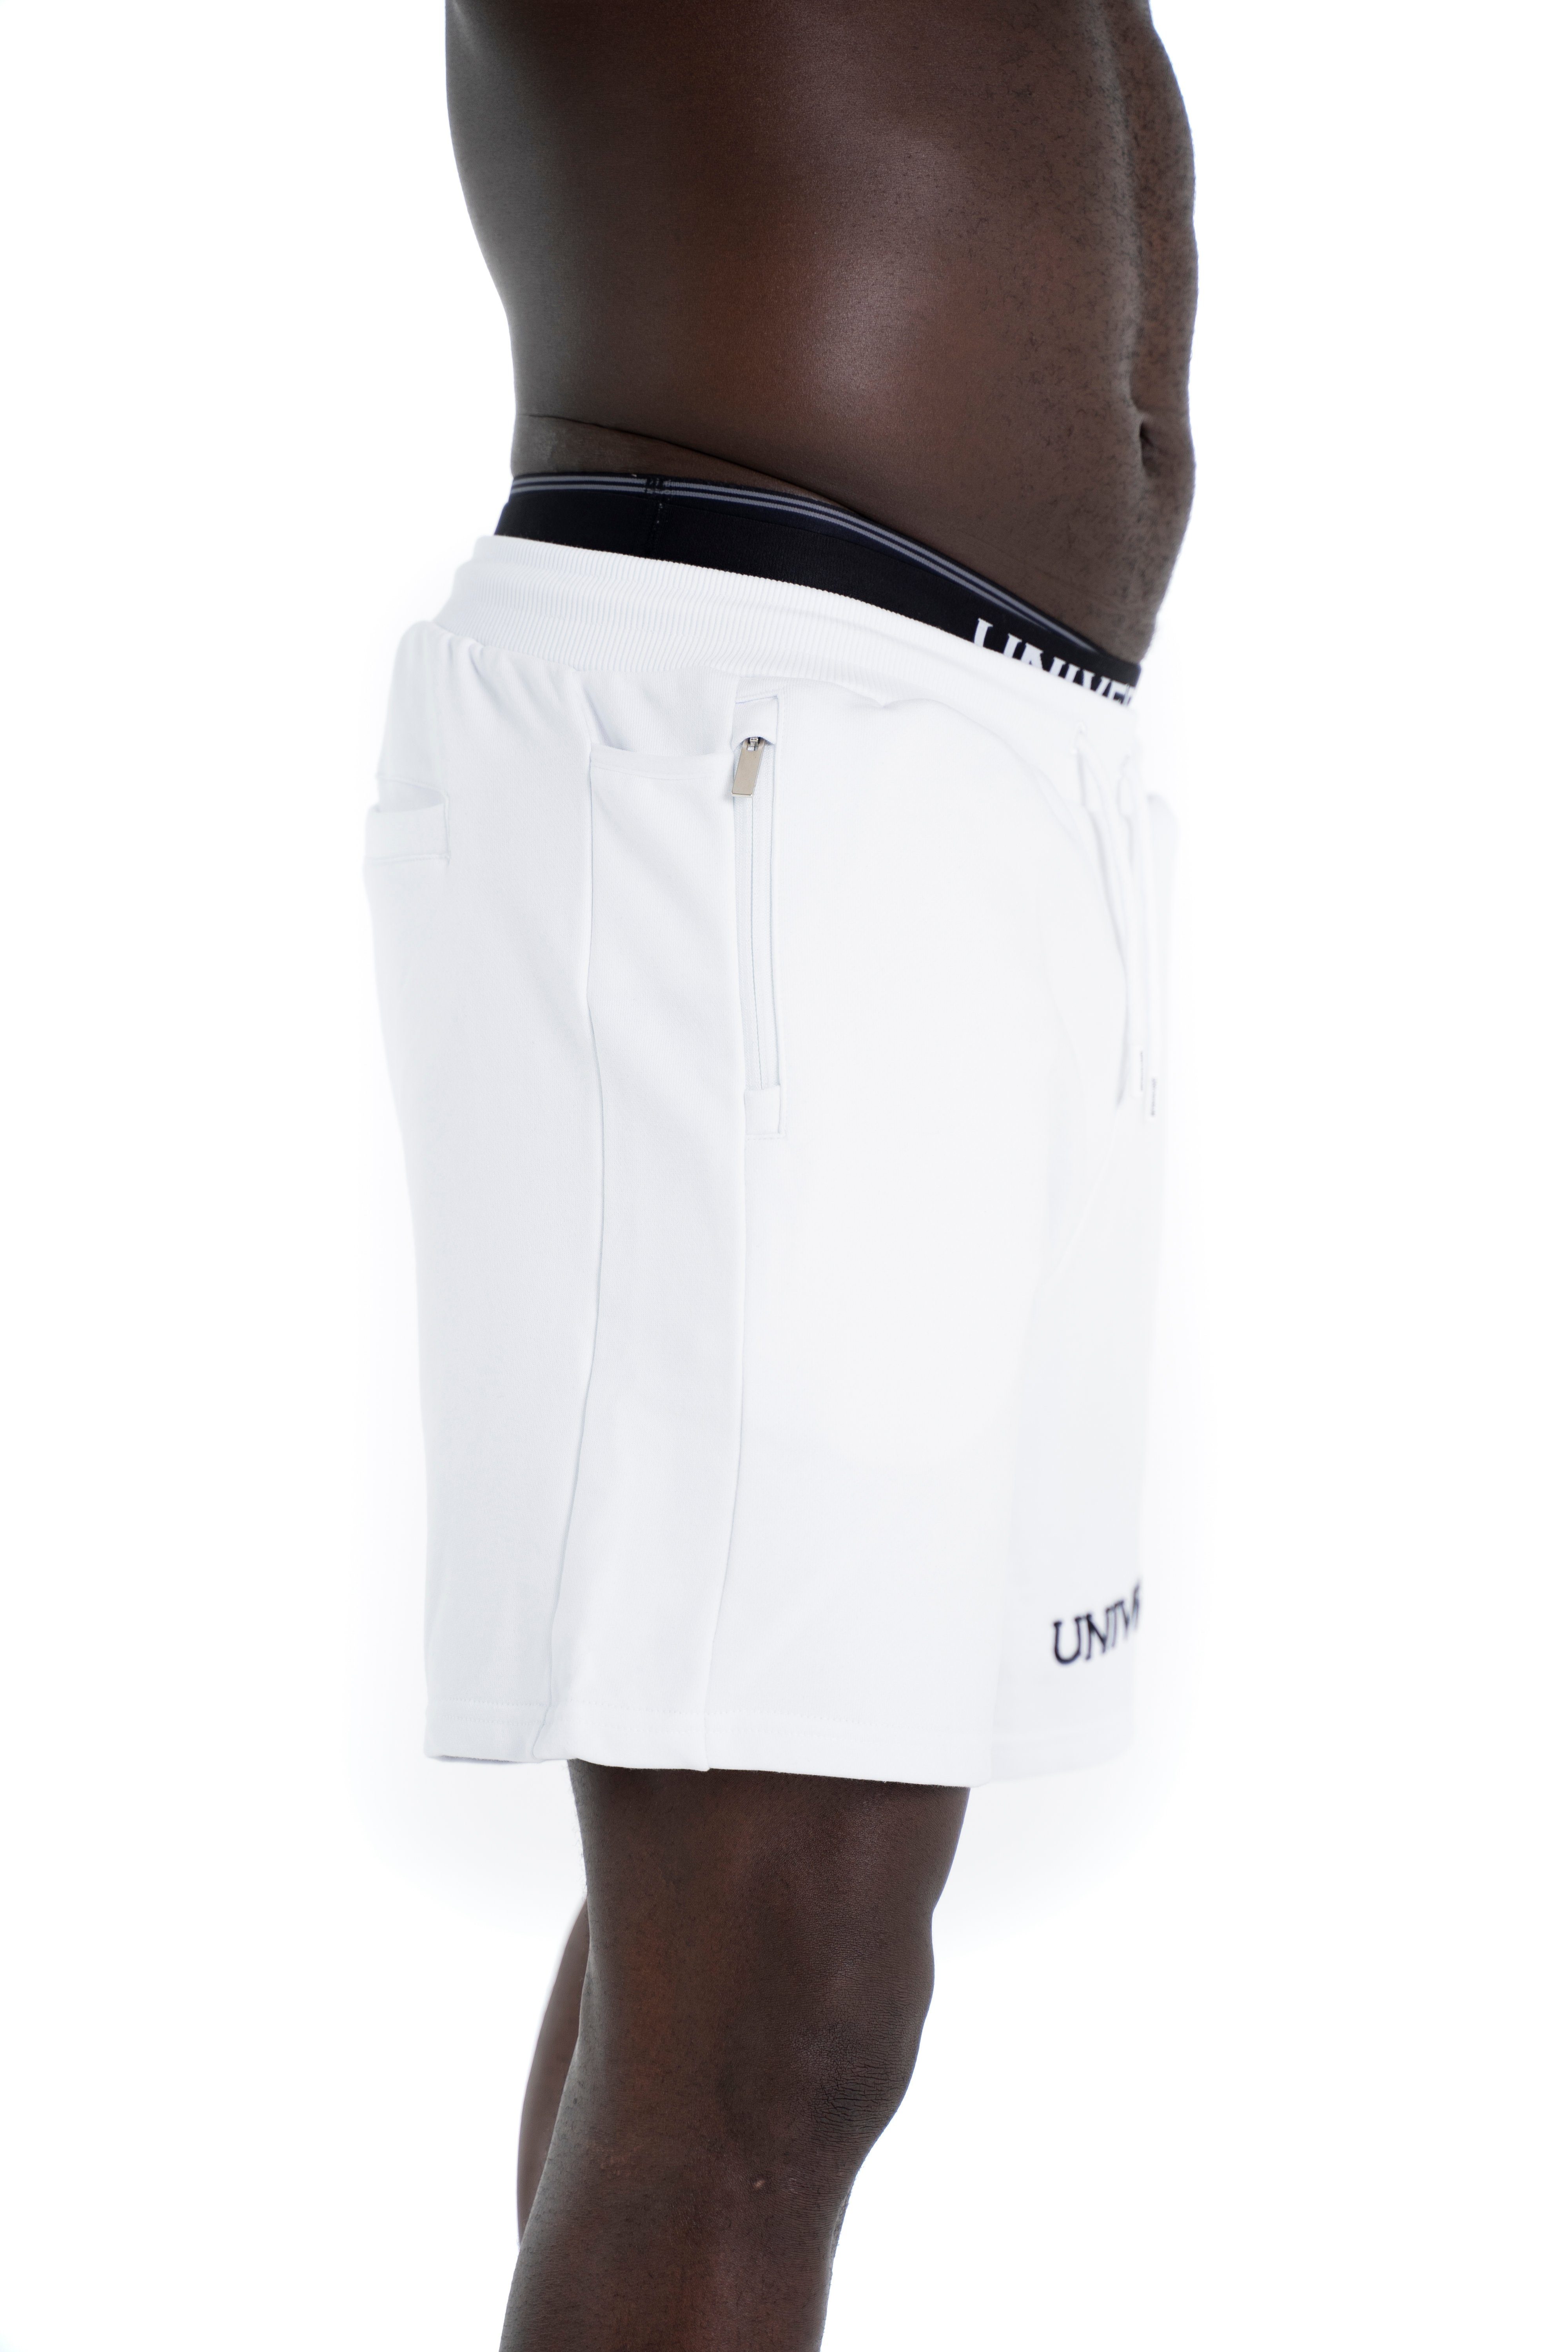 Shorts Kurze Modern Sport, Sweatshorts Shorts für Fitness Weiß Freizeit Cotton und Sportwear Universum